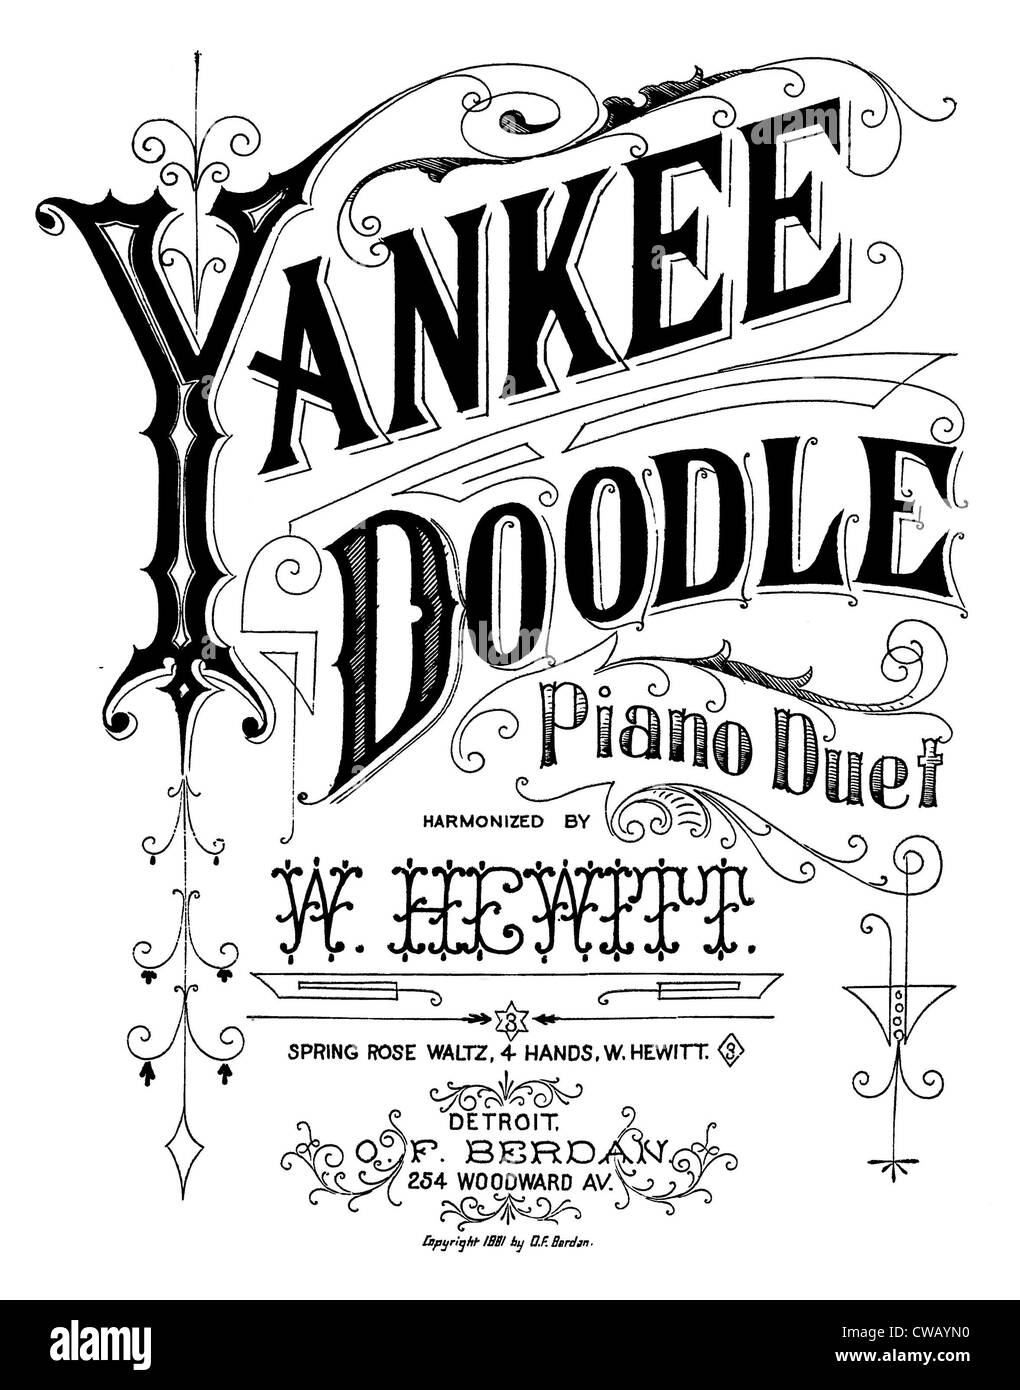 Yankee Doodle, amerikanisches patriotisches Lied, Klavier zu vier Händen harmonisiert durch W. Hewitt, Noten, 1881. Stockfoto